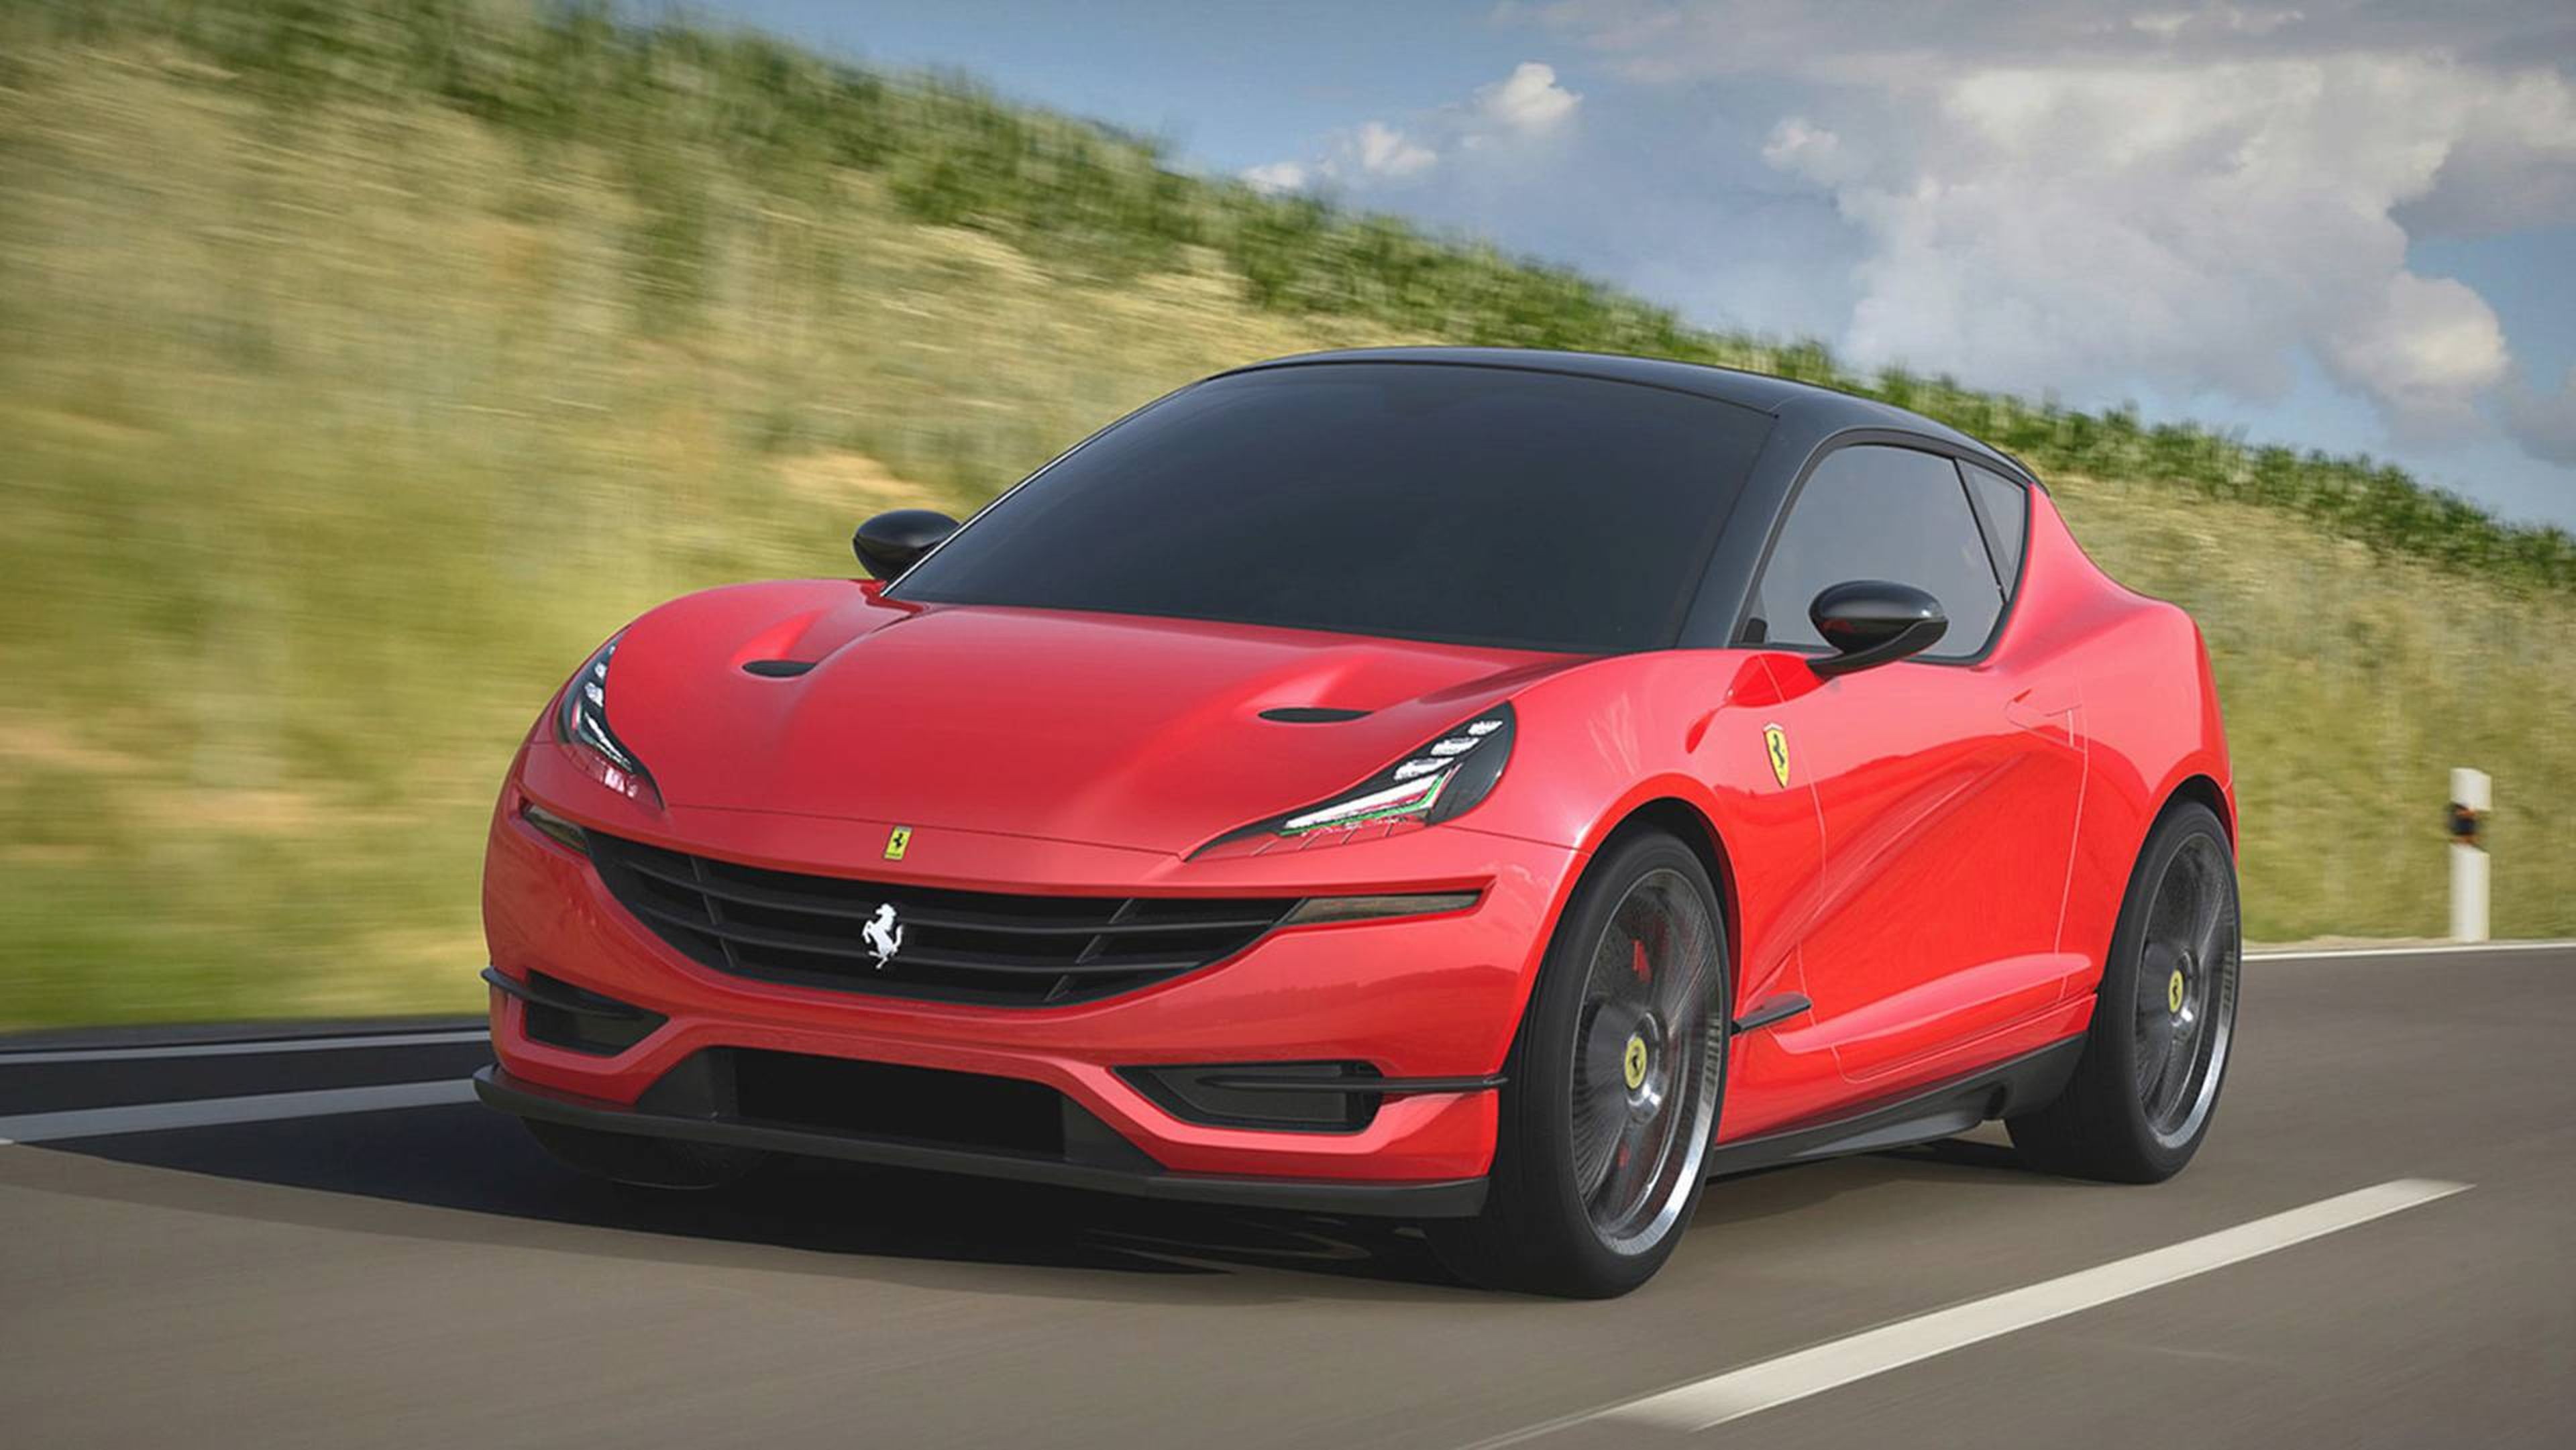 Si Ferrari produjese un compacto, ¿sería así?